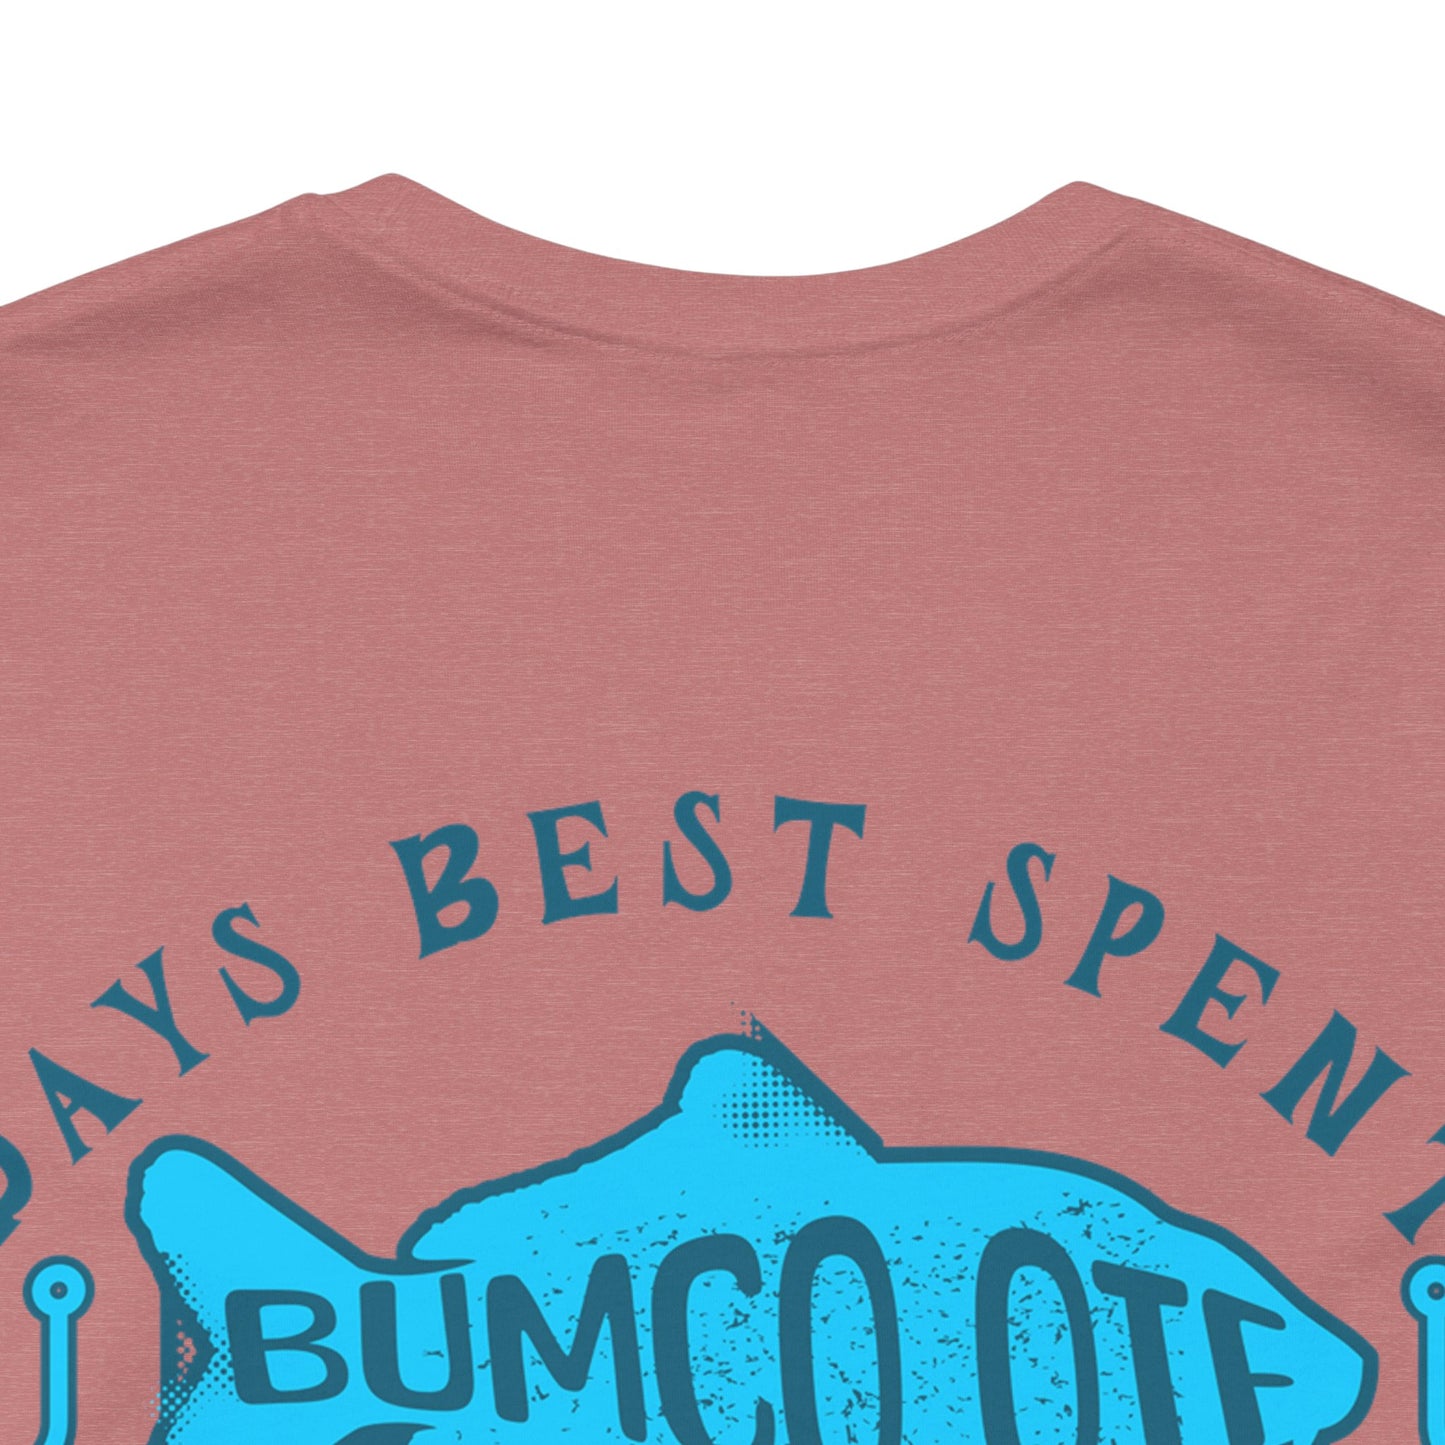 Days Best Spent - T-Shirt